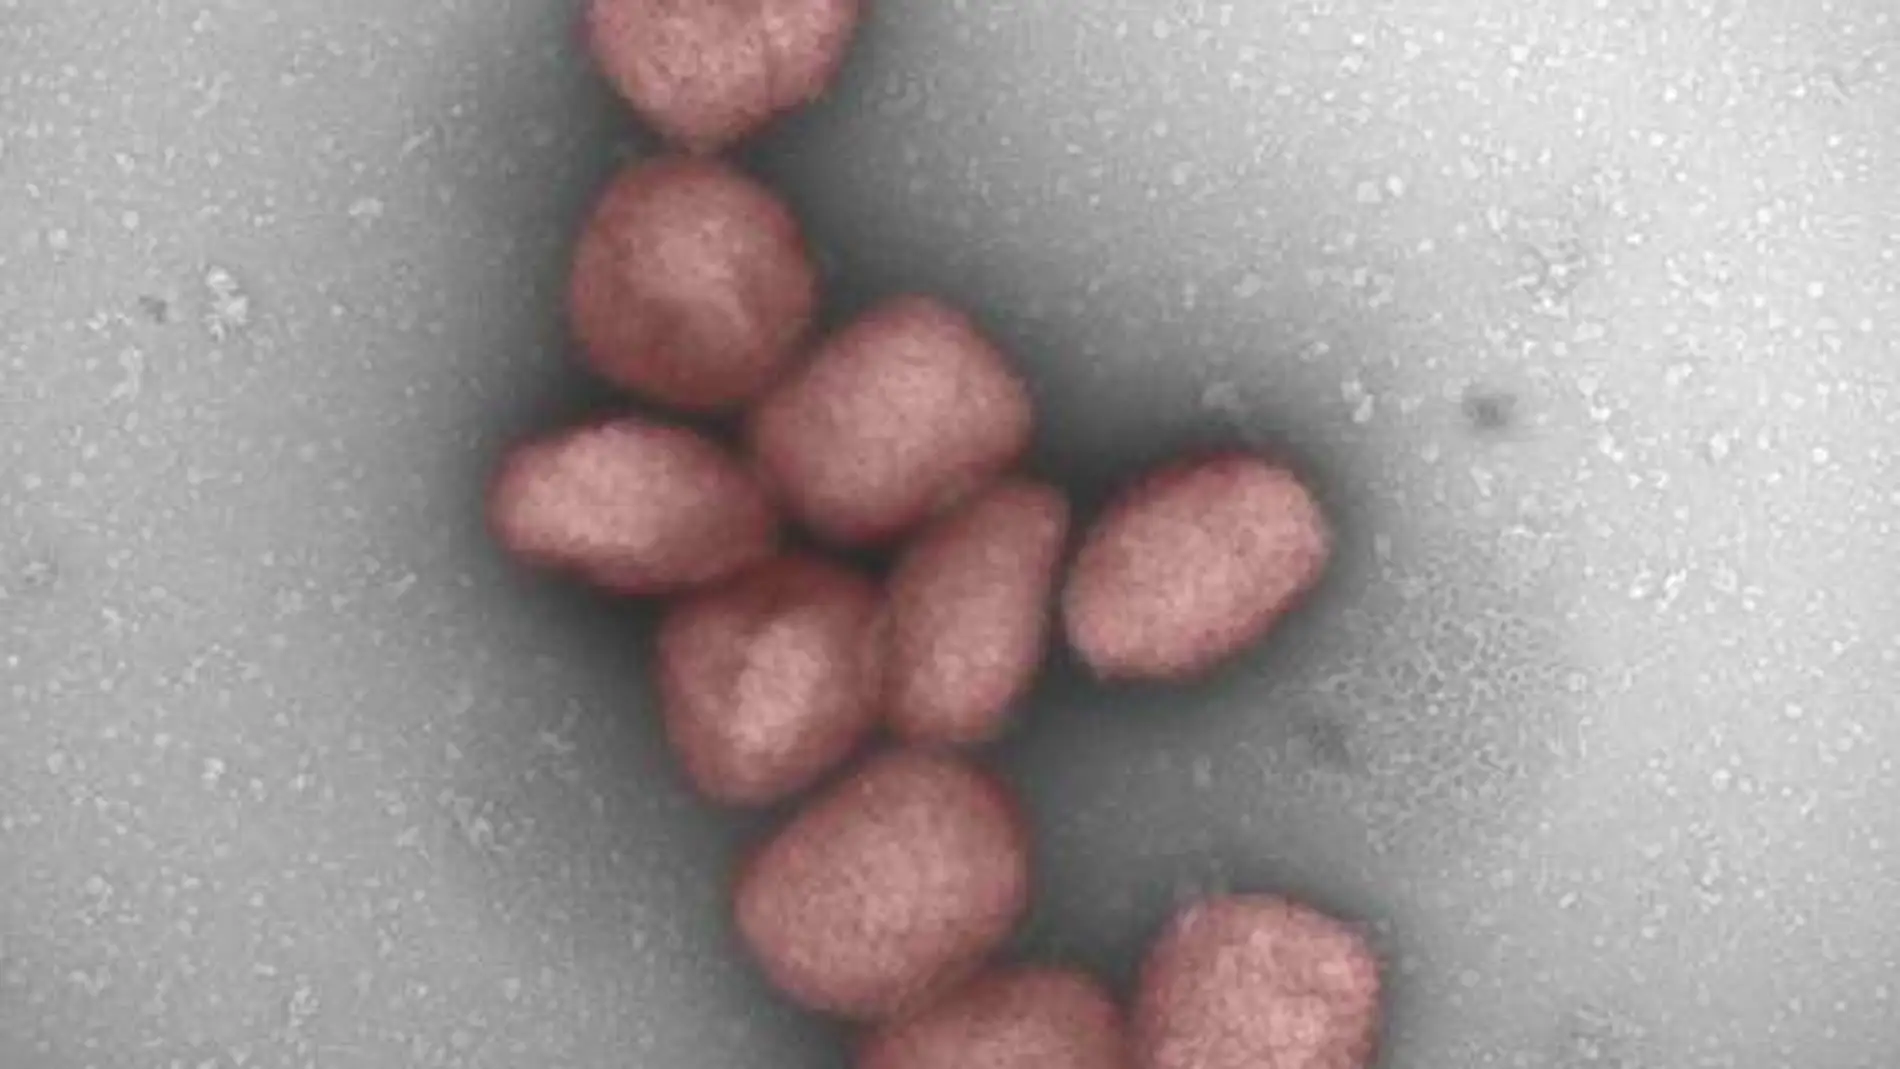 Partículas del virus de la viruela del mono teñidas de rojo